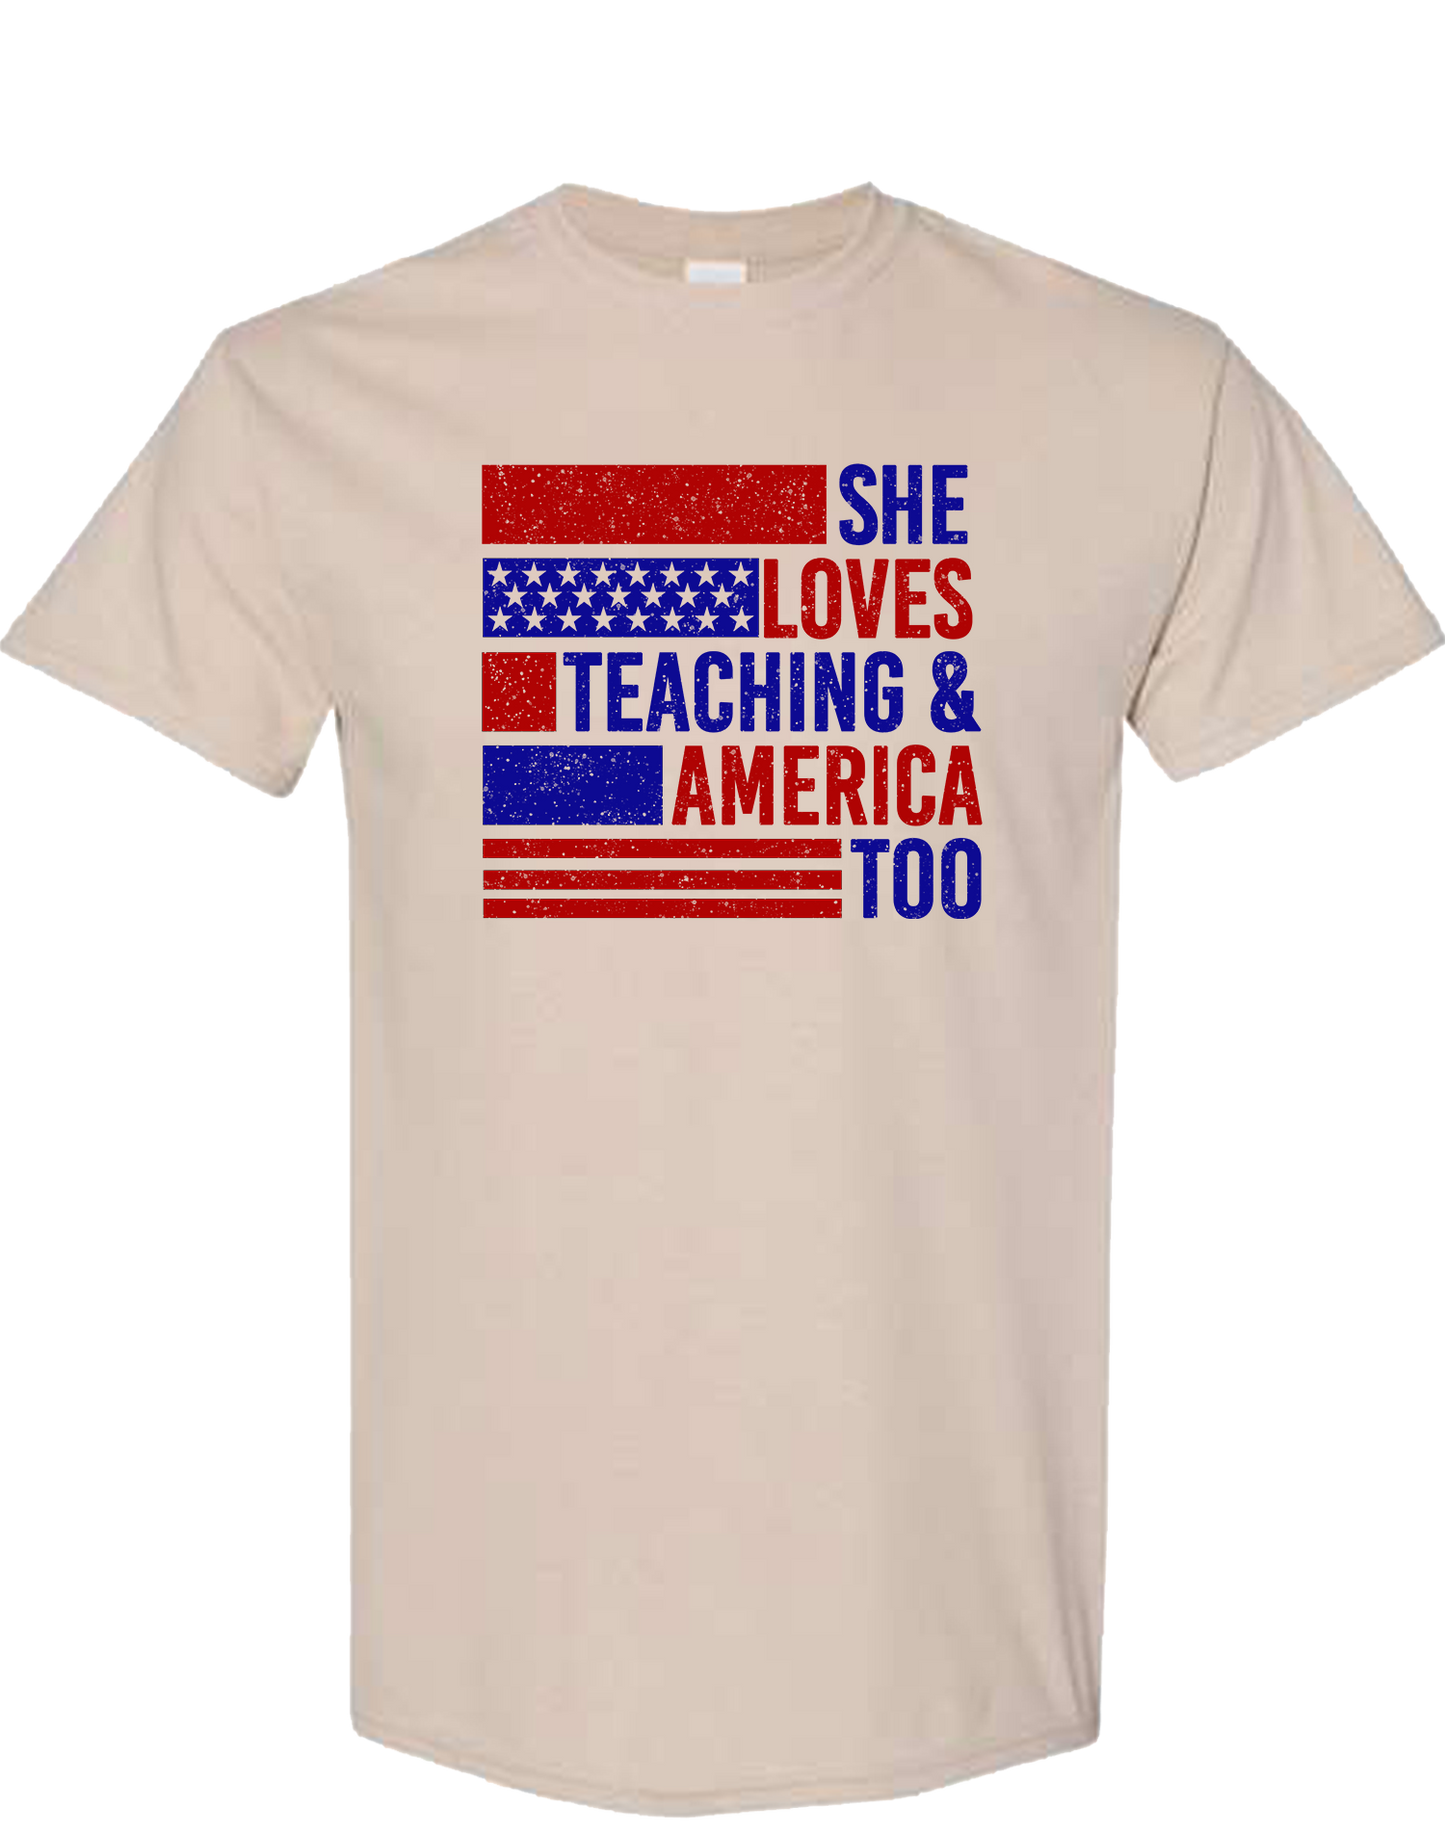 Teaching & America Too